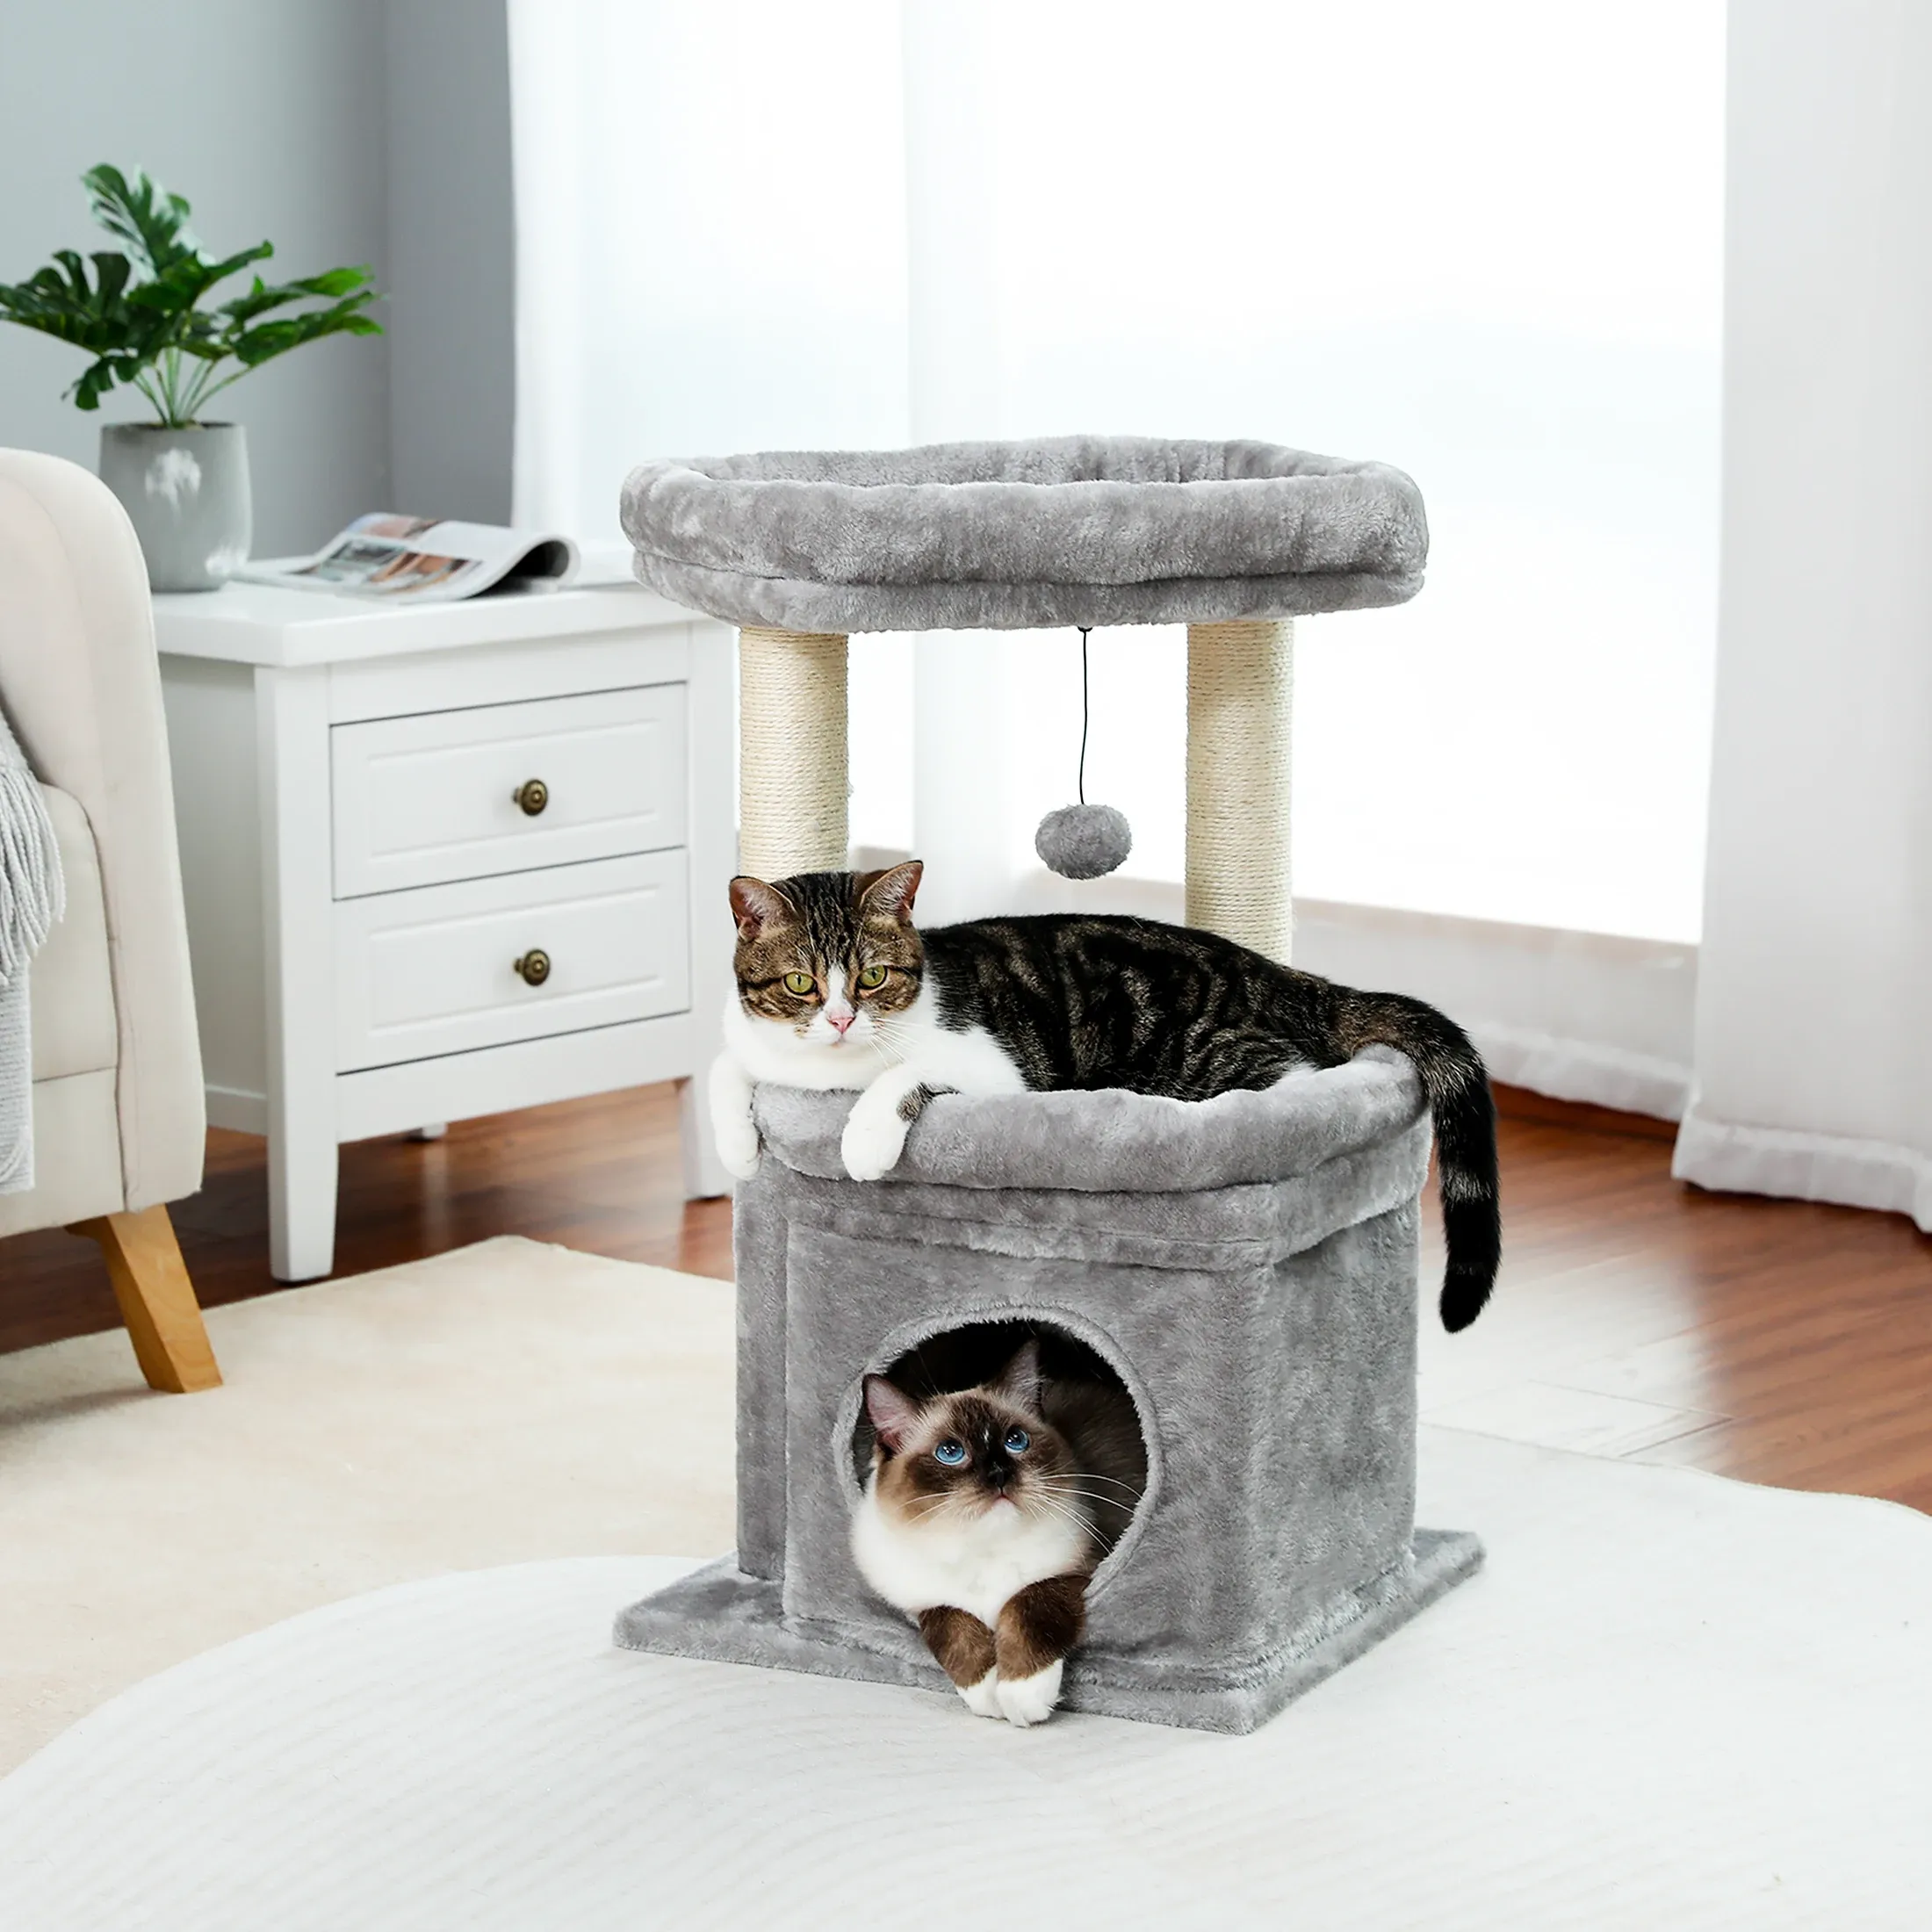 Скретчики бесплатная доставка маленькая кошачья башня кошка кондо, игрушечные скребки кошки царапины для кошачьей мебели для домашних животных аксессуаров кошачьи принадлежности